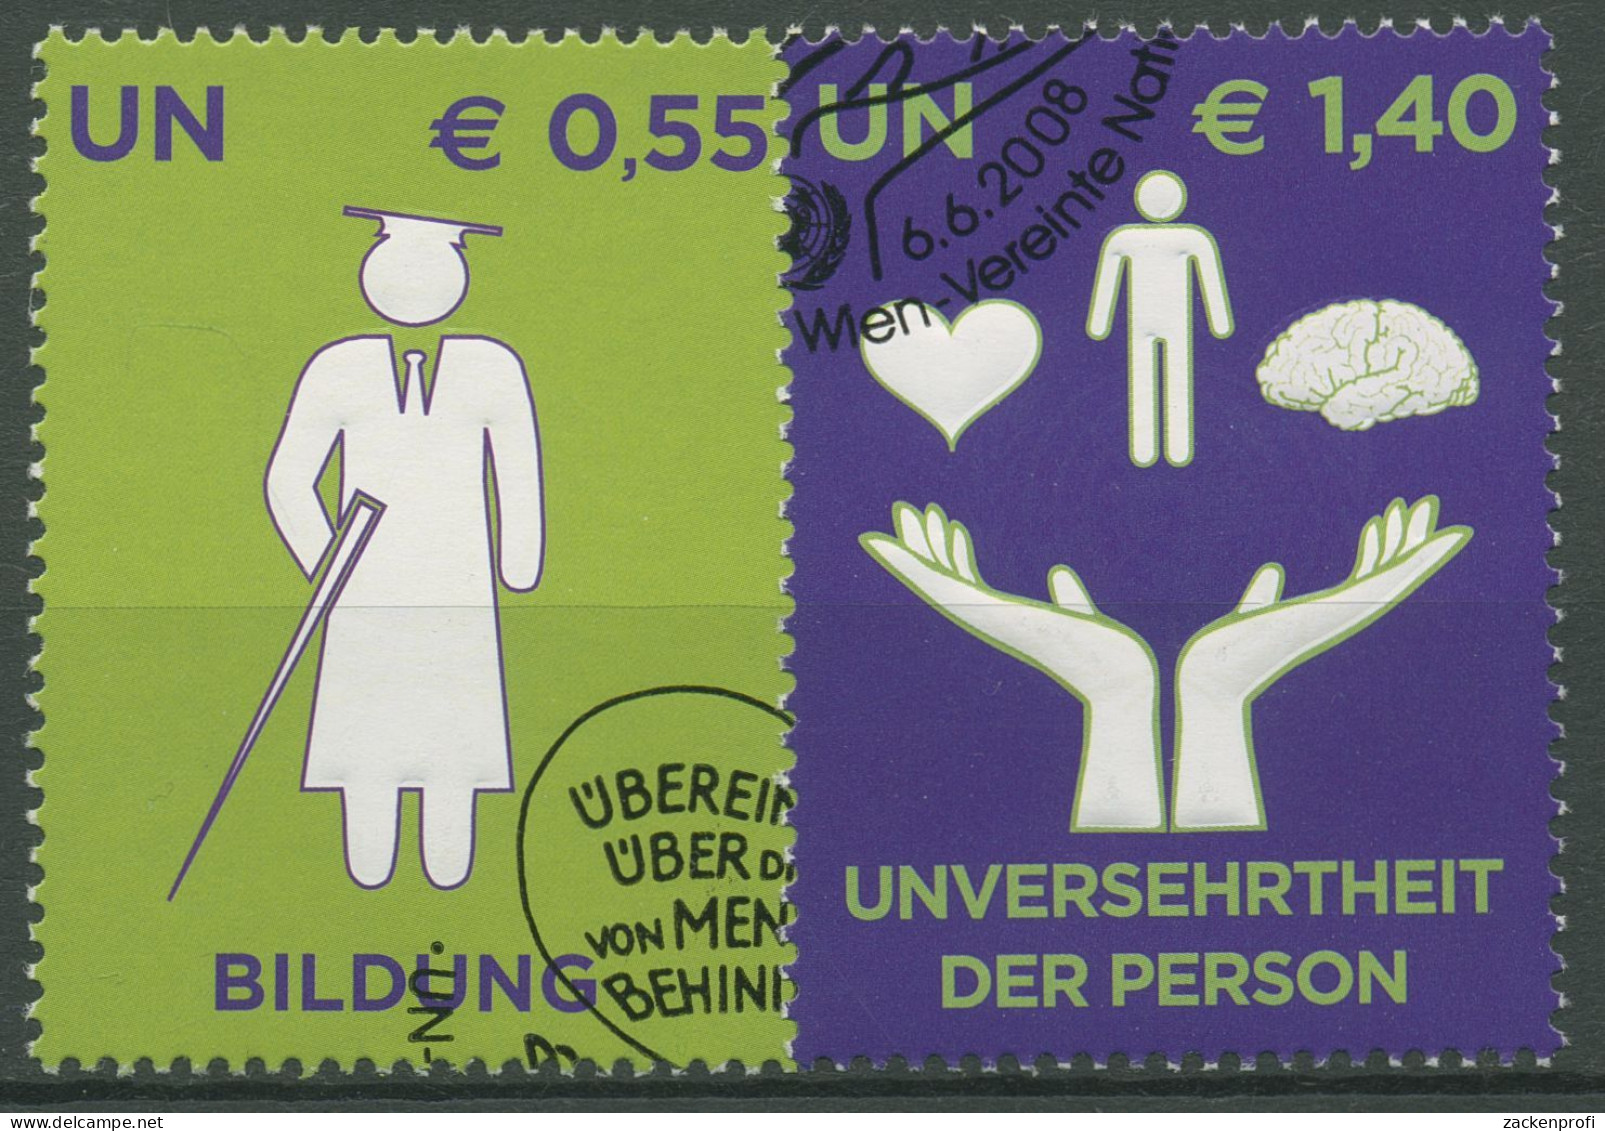 UNO Wien 2008 Menschen Mit Behinderung 543/44 Gestempelt - Usati